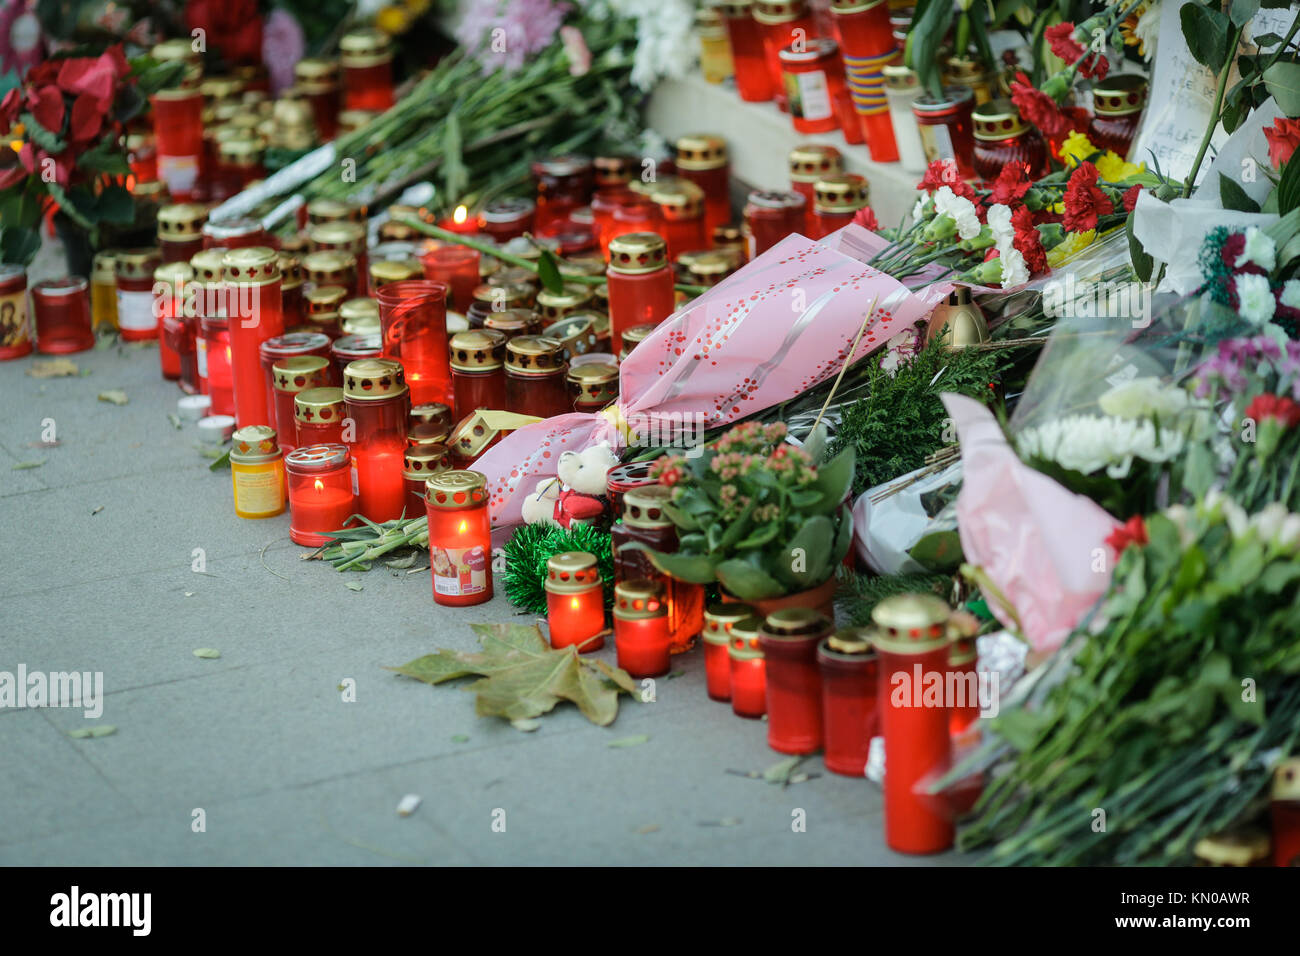 Kerzen und Blumen auf dem Bürgersteig ein berühmter toter Person zu comemorate Stockfoto